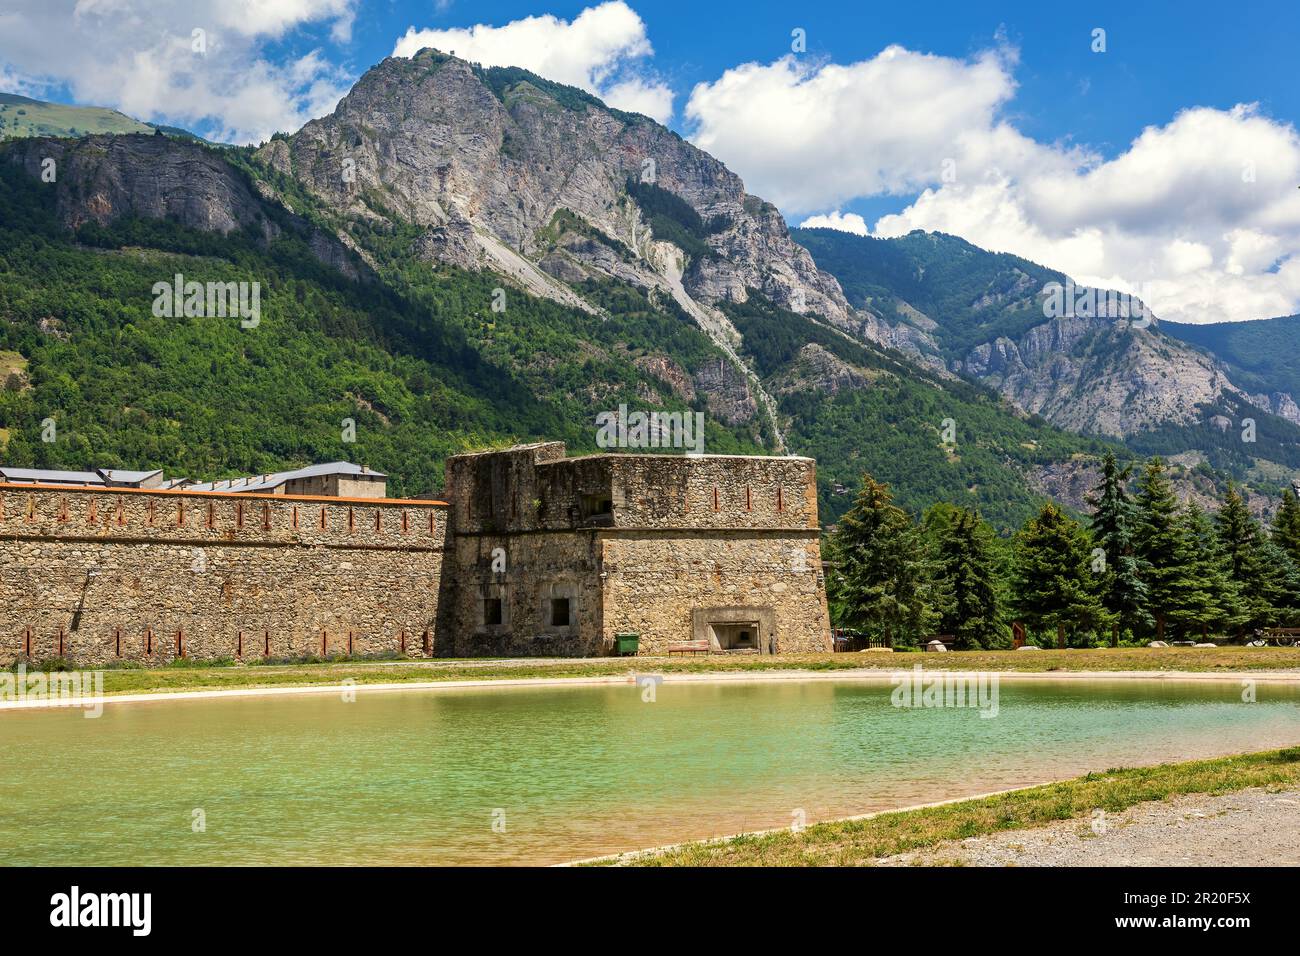 Vue sur le petit lac artificiel, l'ancienne forteresse militaire et les montagnes en arrière-plan à Vinadio, en Italie. Banque D'Images